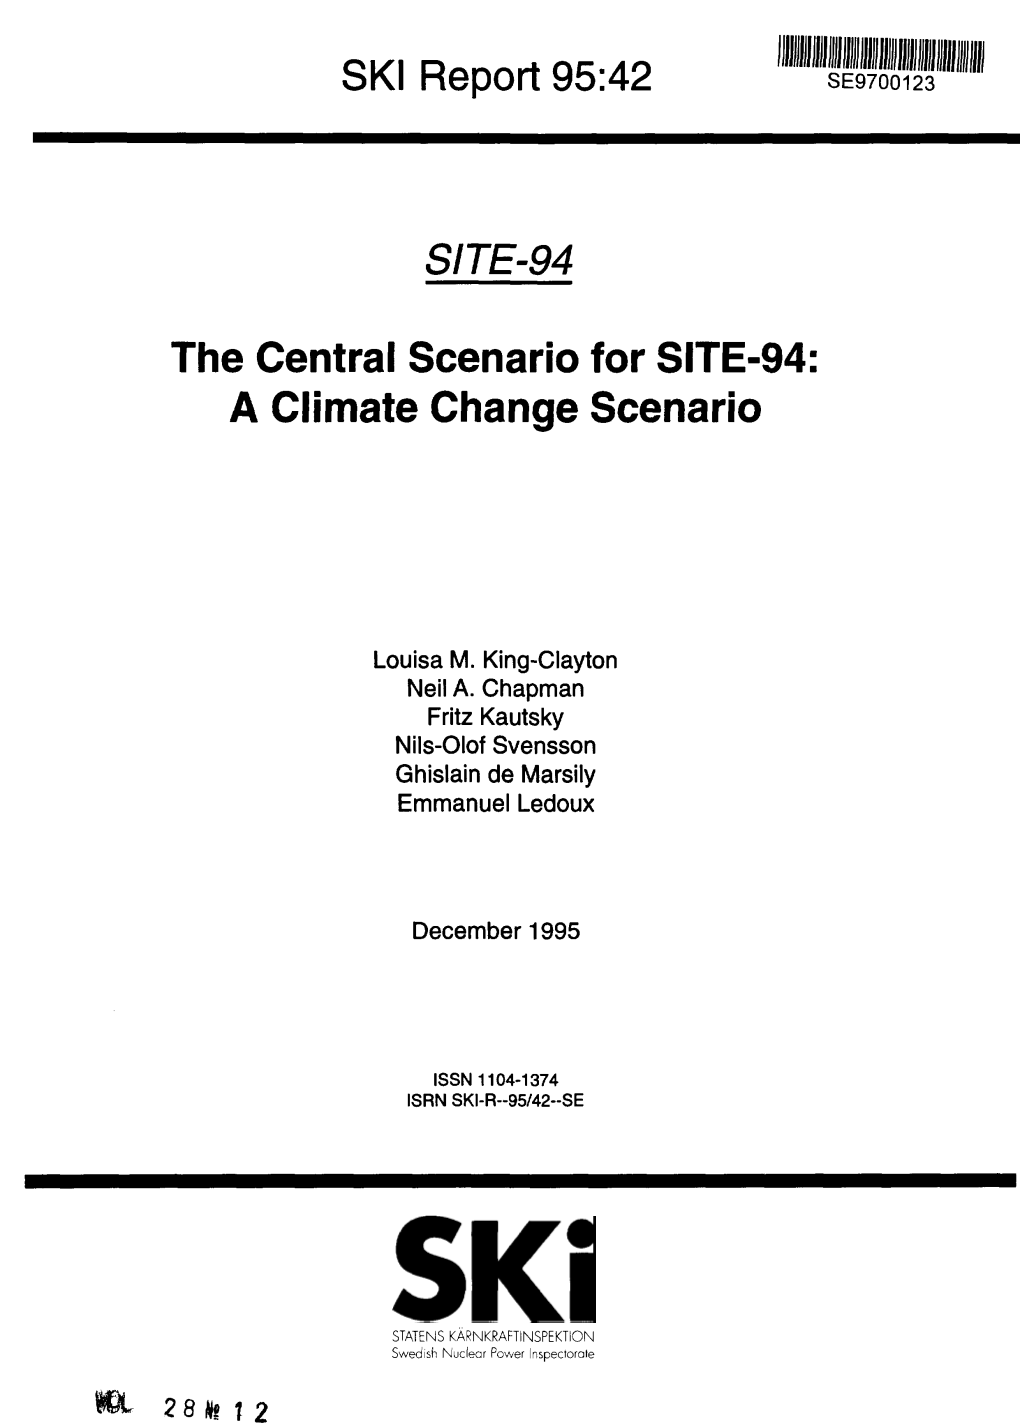 SITE-94. the Central Scenario for SITE-94: a Climate Change Scenario